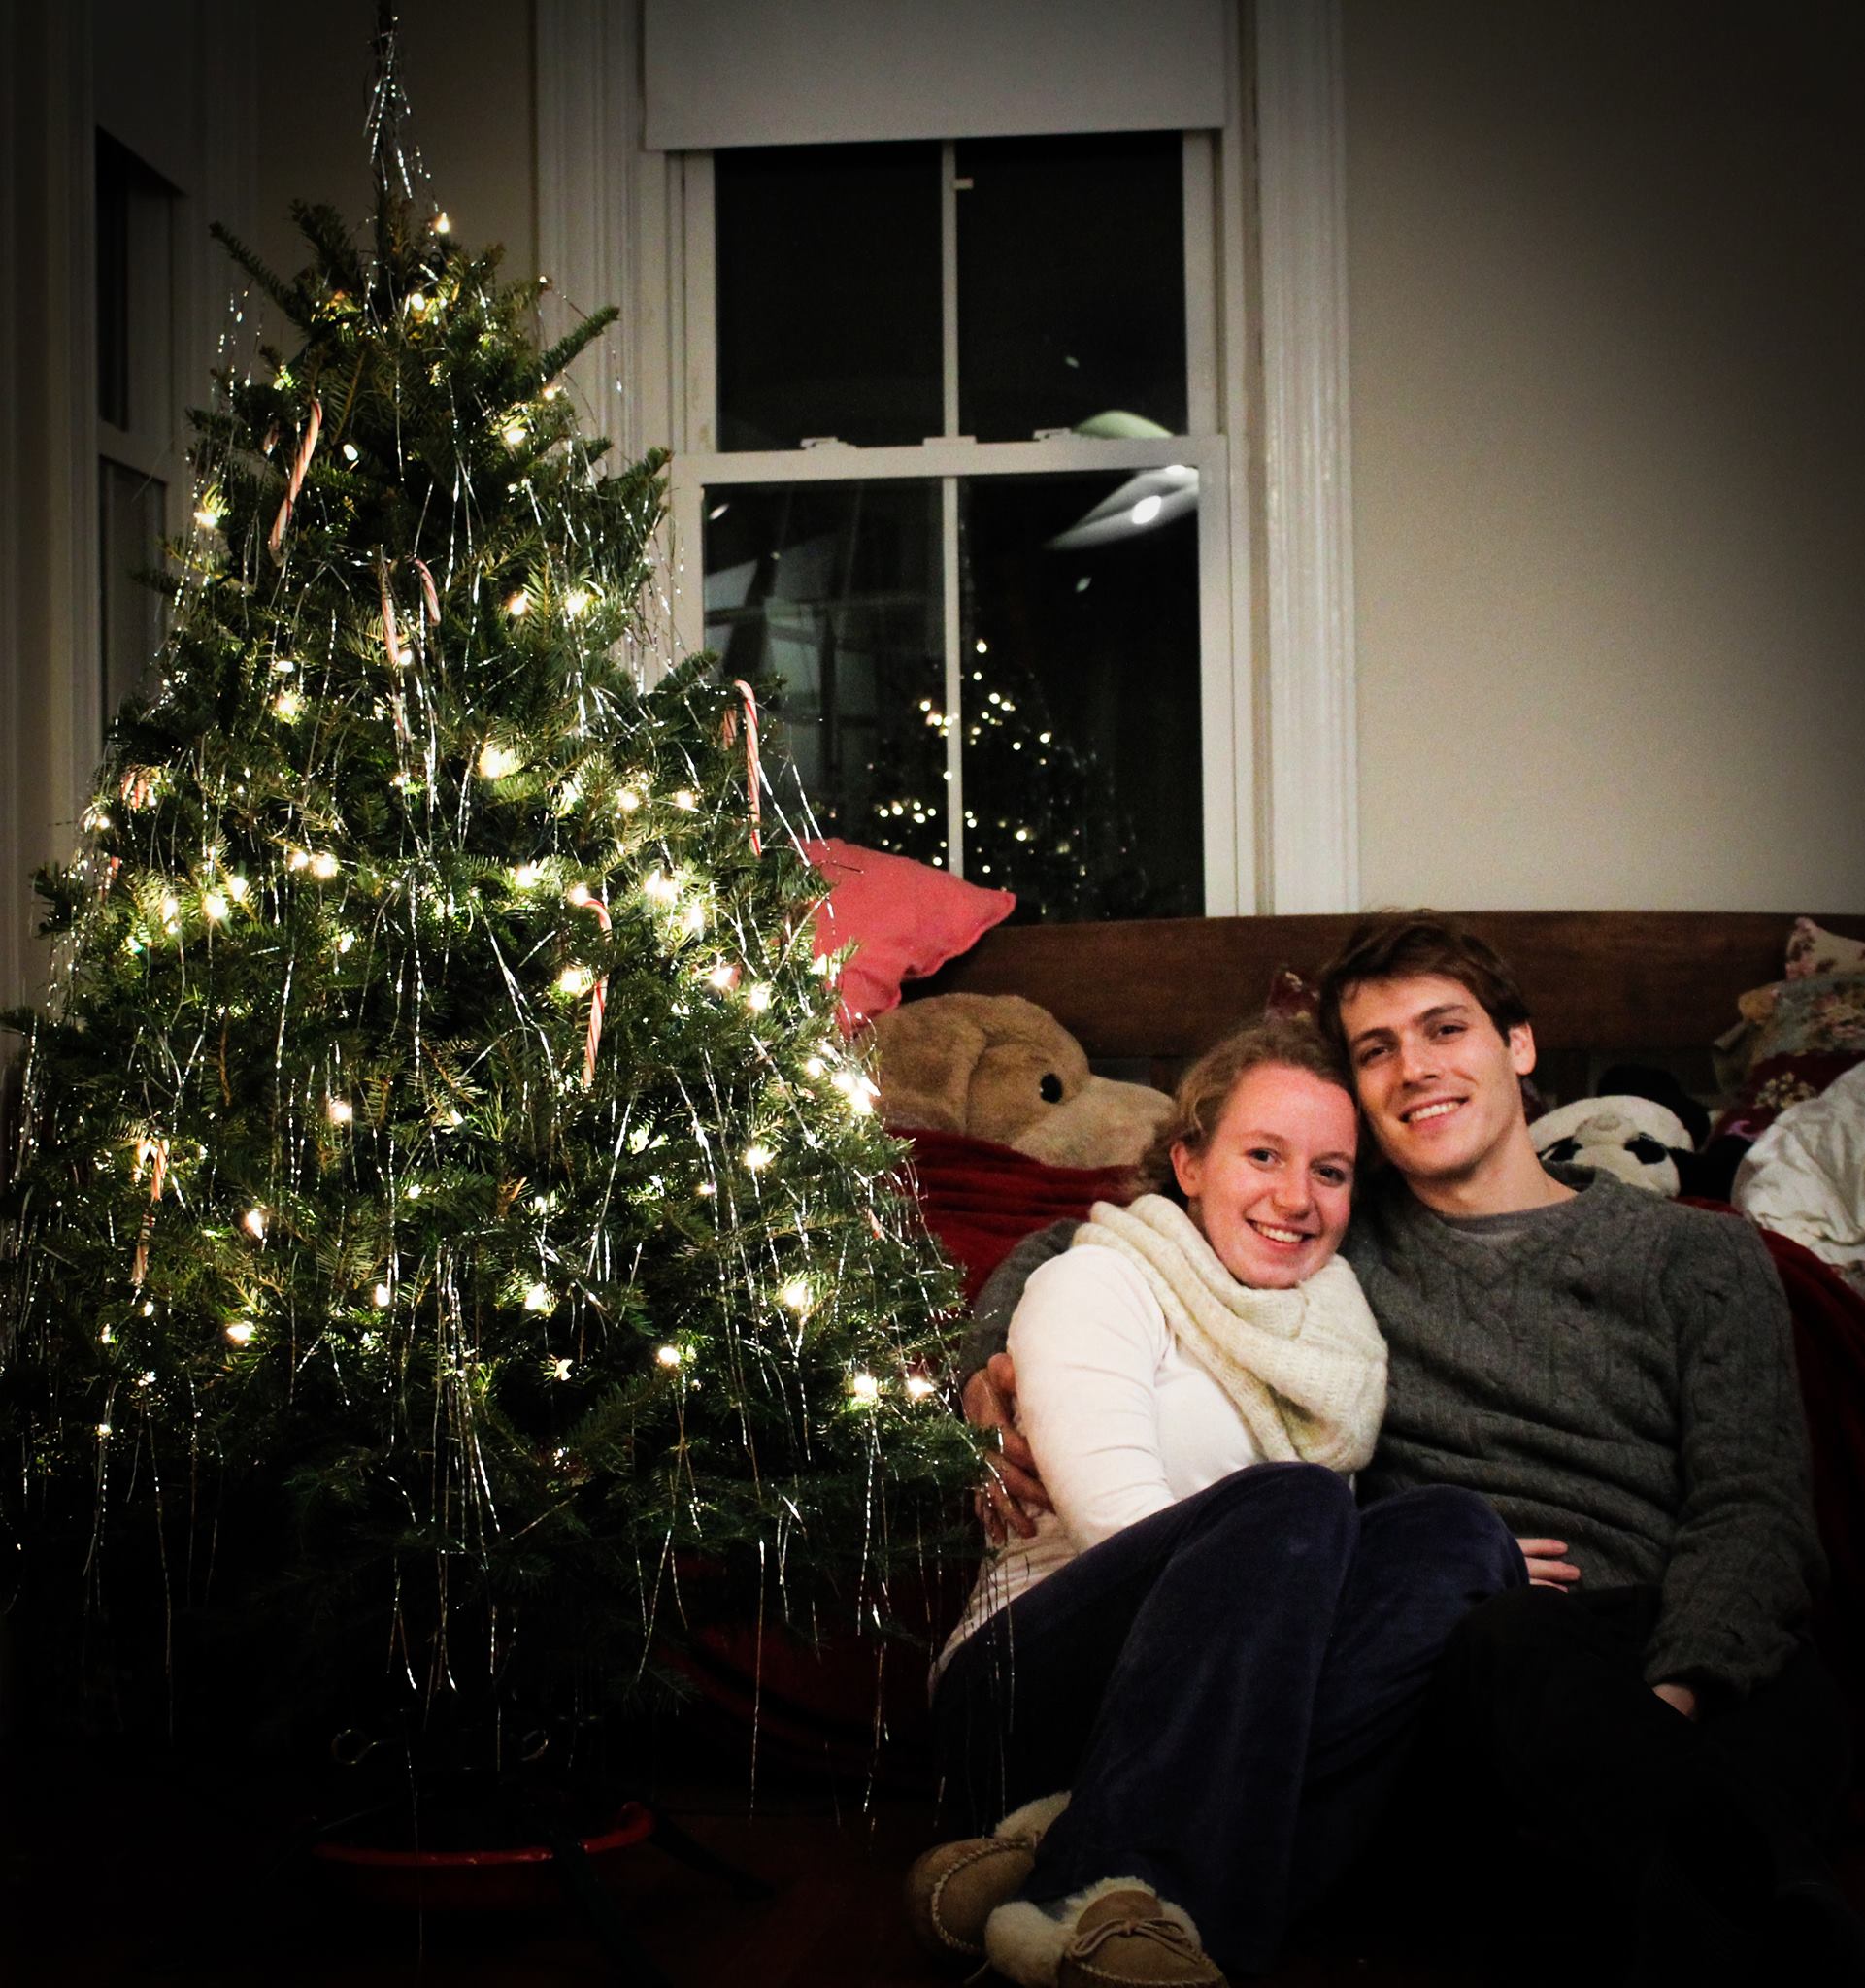 Gratuitous Christmas Tree Picture